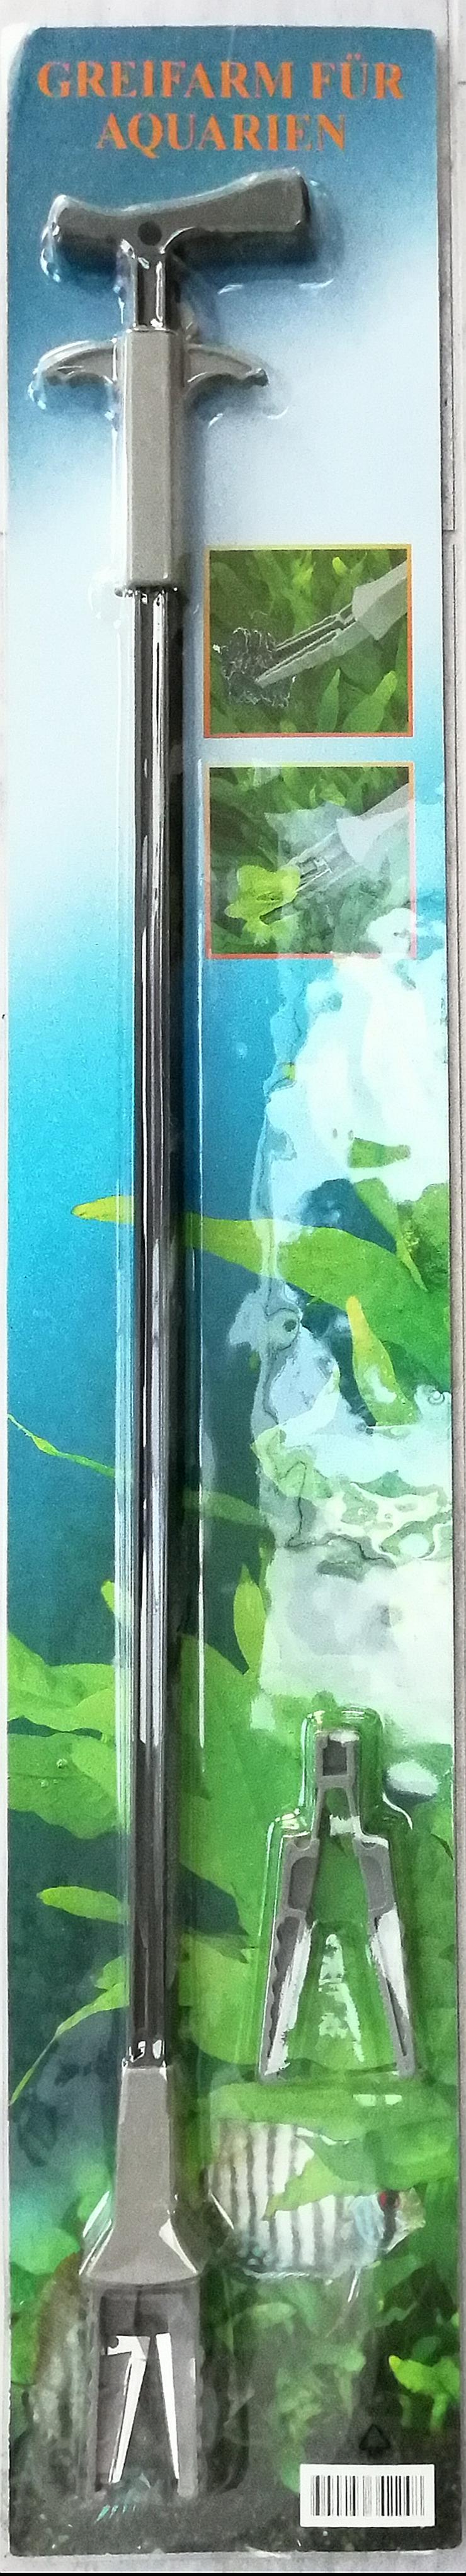 Greifer für Aquarien, 70 cm, mit Pflanzenschere, neu in OVP  - Aquarien Zubehör - Bild 1